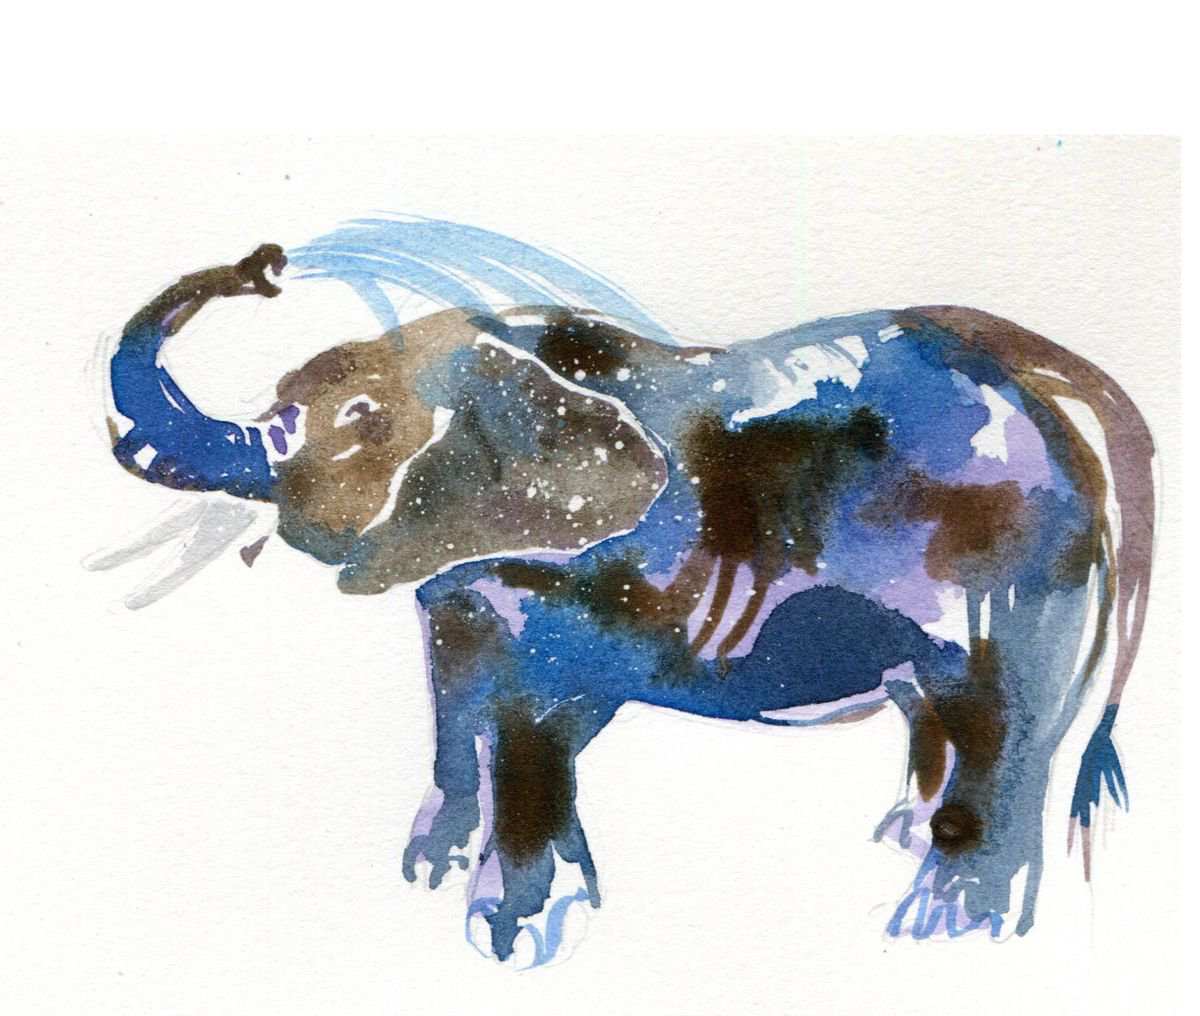 Elephant illustration by Hannah Clark